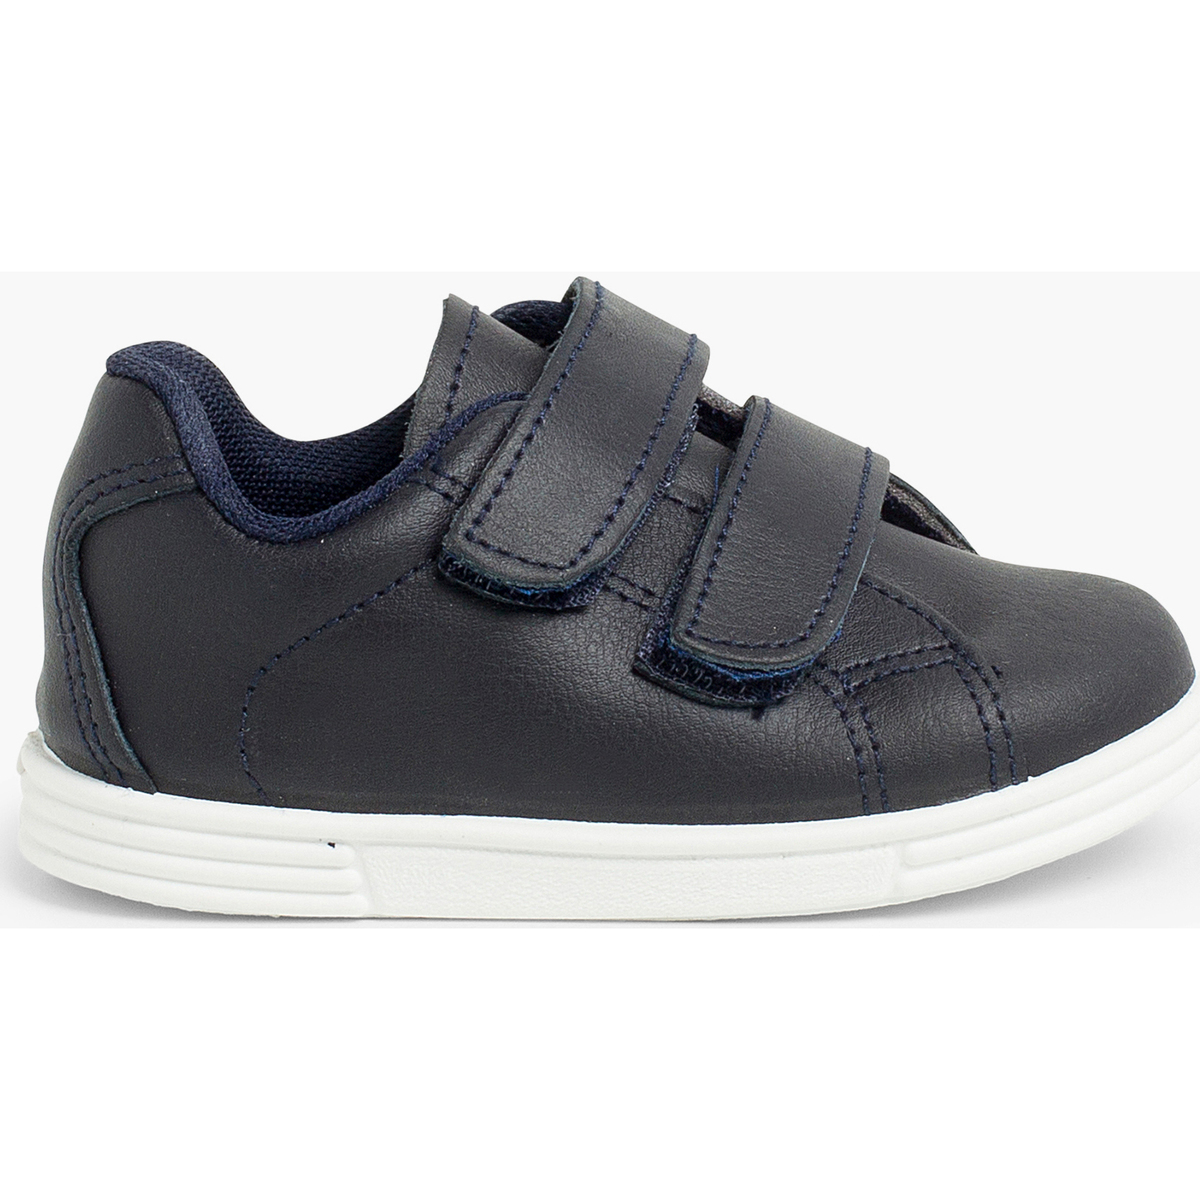 Pisamonas Bleu Chaussures de sport pour bébé et enfant cuir Lavable FuJNS014